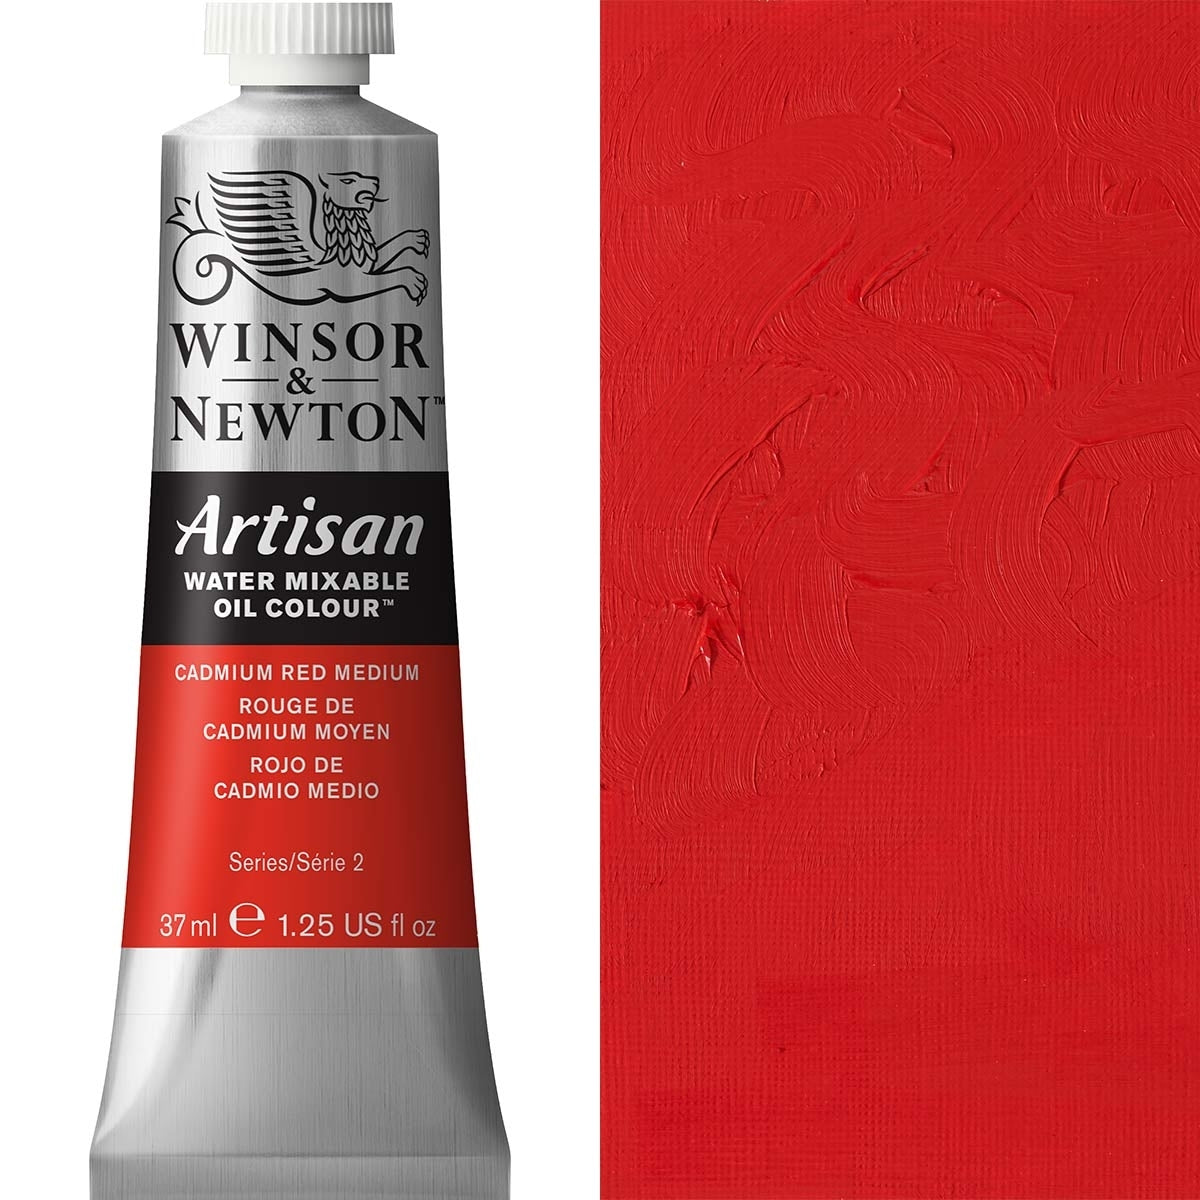 Winsor e Newton - Watermixable di colore olio artigiano - 37 ml - Medium rosso cadmio